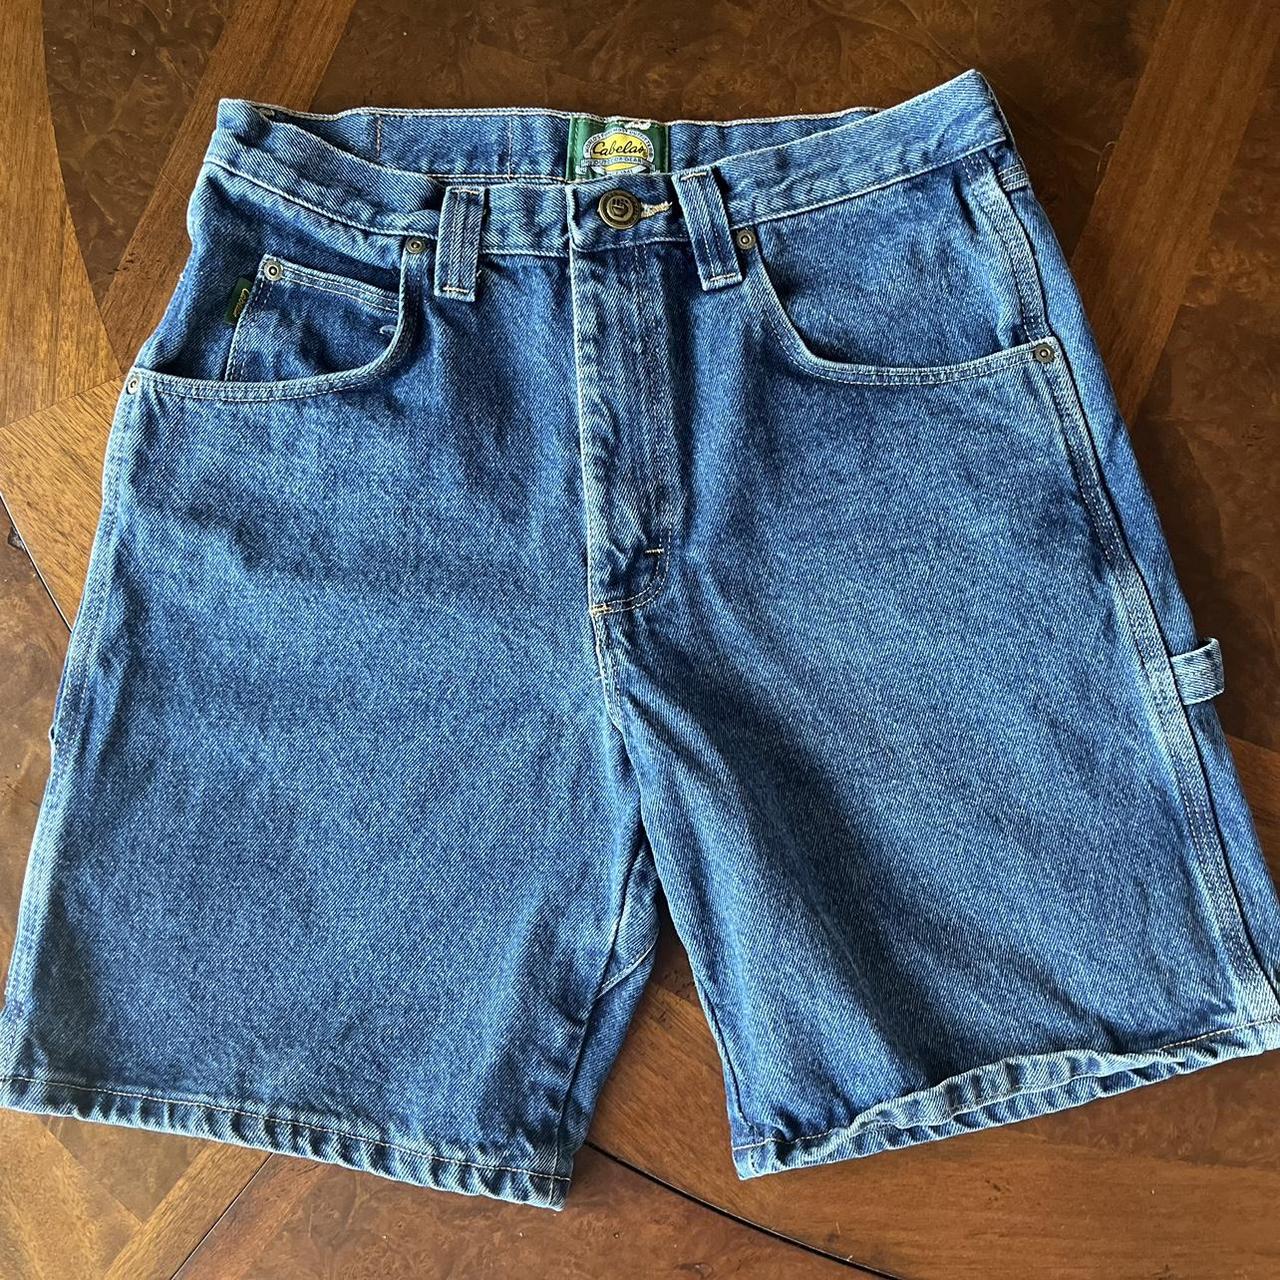 Cabela’s navy jean shorts/Jorts 6 pockets Size 32... - Depop